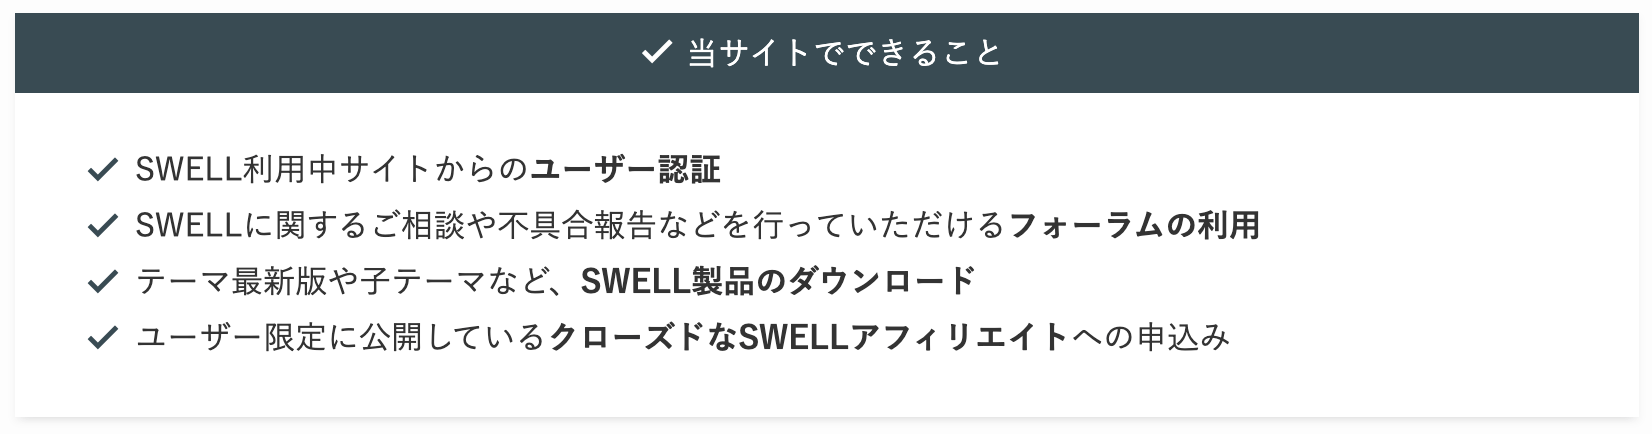 SWELL製品のダウンロードページ注意書きの画像イメージ